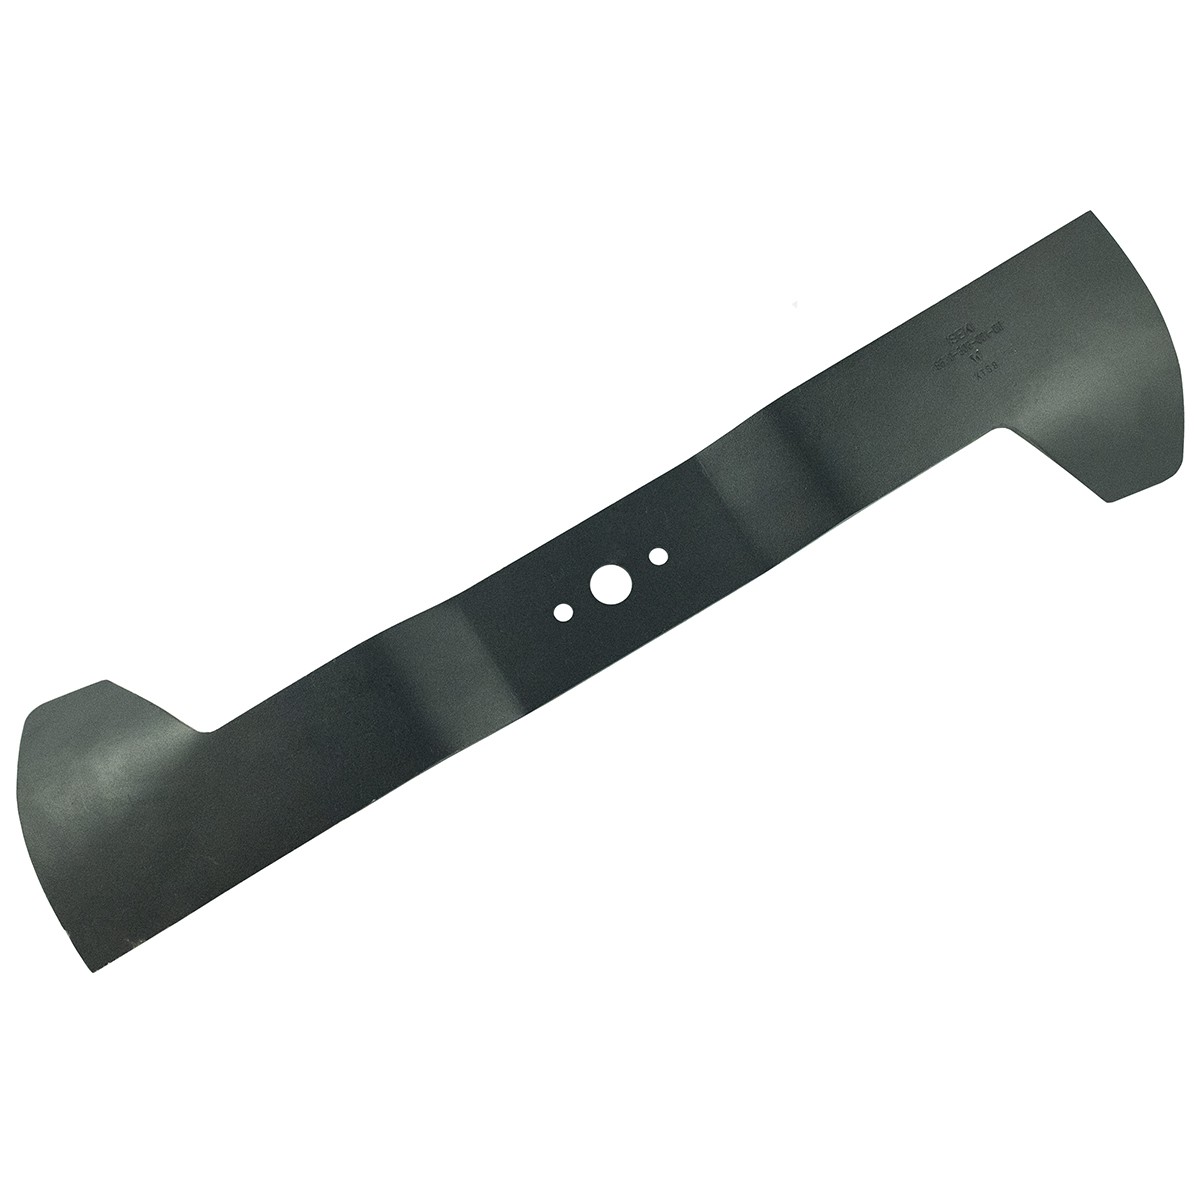 Knife for lawn mower 535 mm, Iseki SXG 326, 8674-306-001-00, LEFT